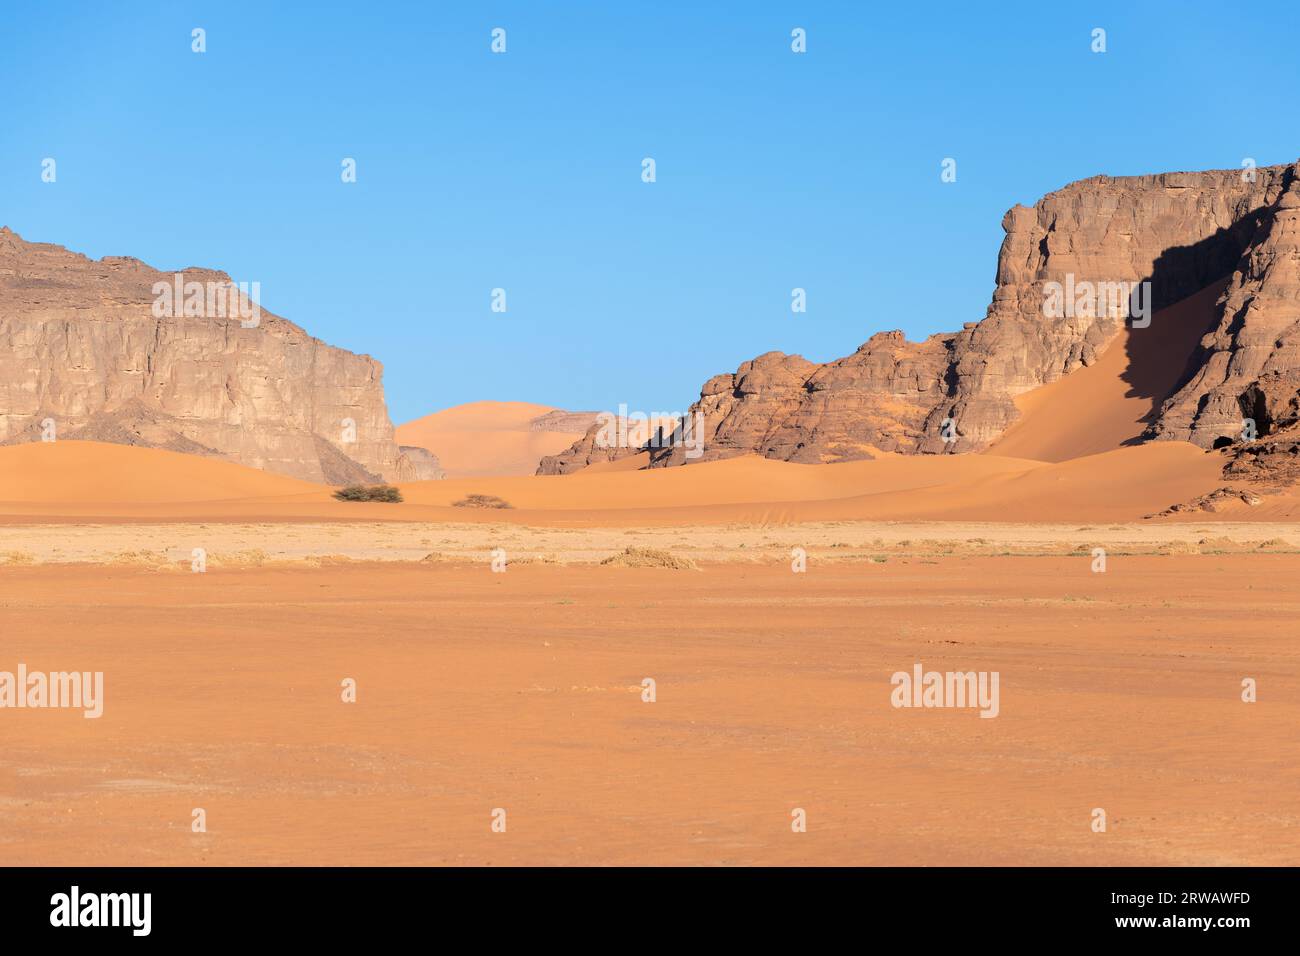 Panorama in the Sahara desert Stock Photo